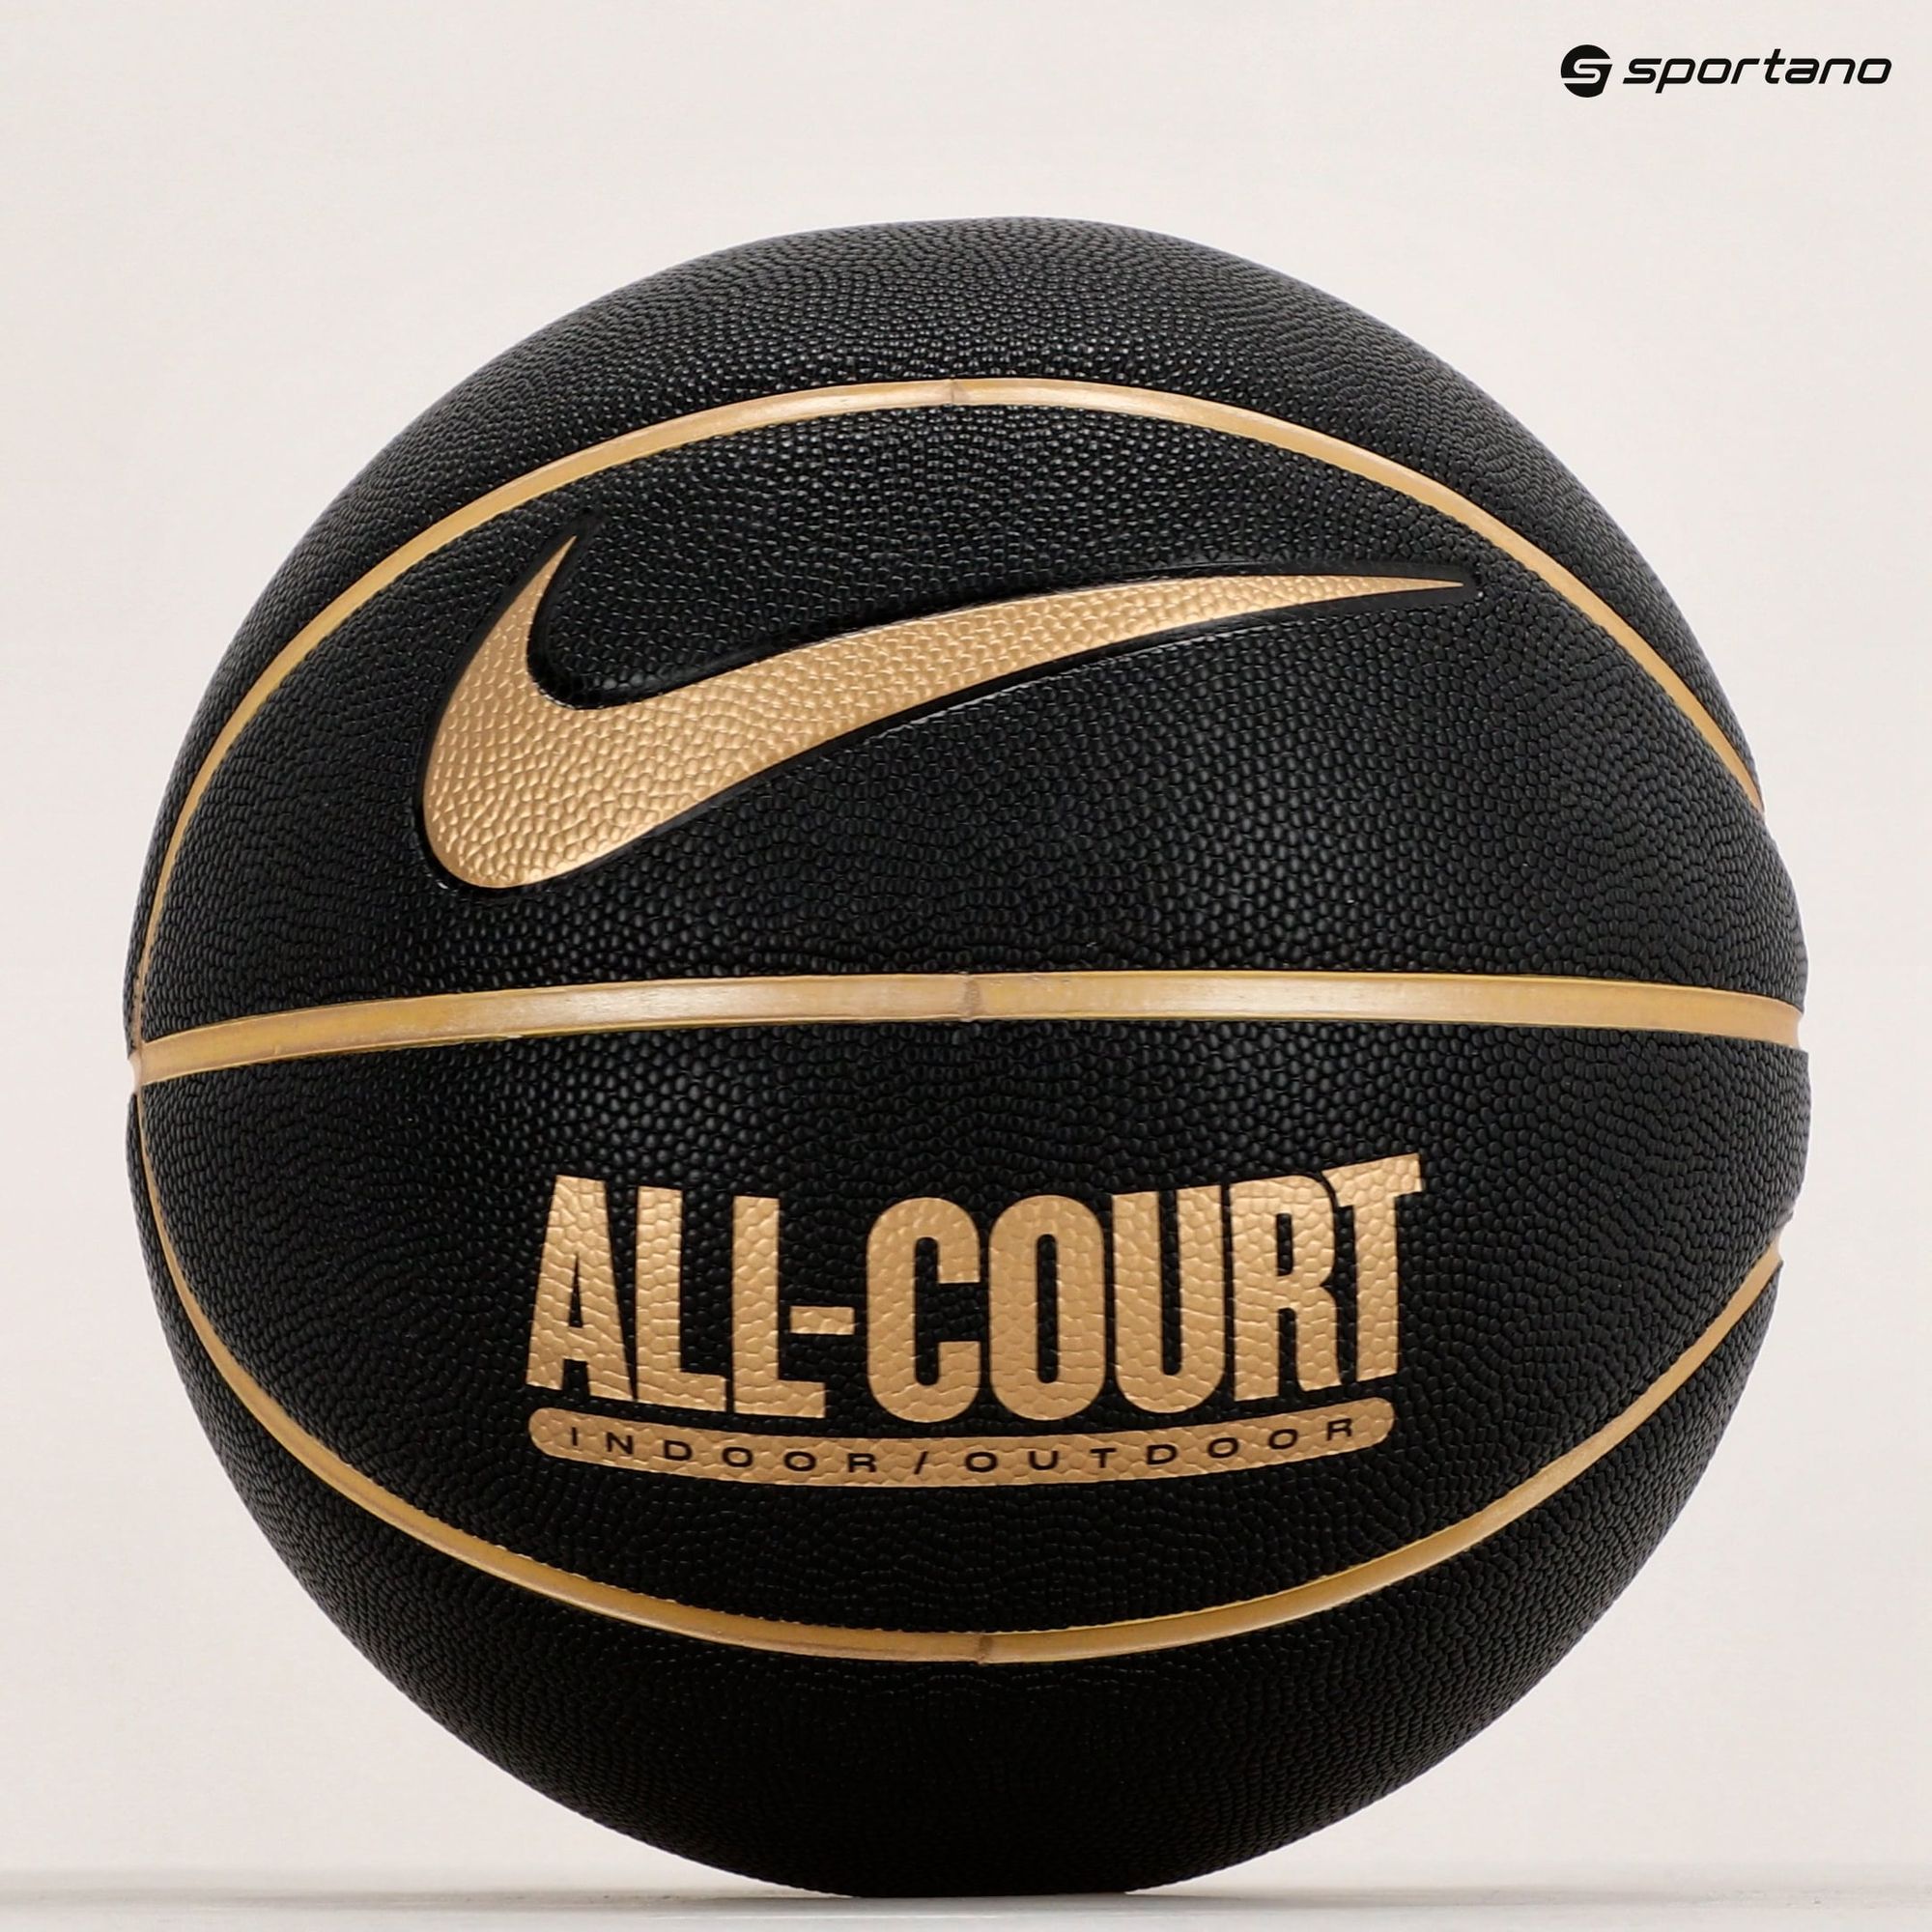 Piłka do koszykówki Nike Everyday All Court 8P Deflated black/metallic gold rozmiar 7 zdjęcie nr 5